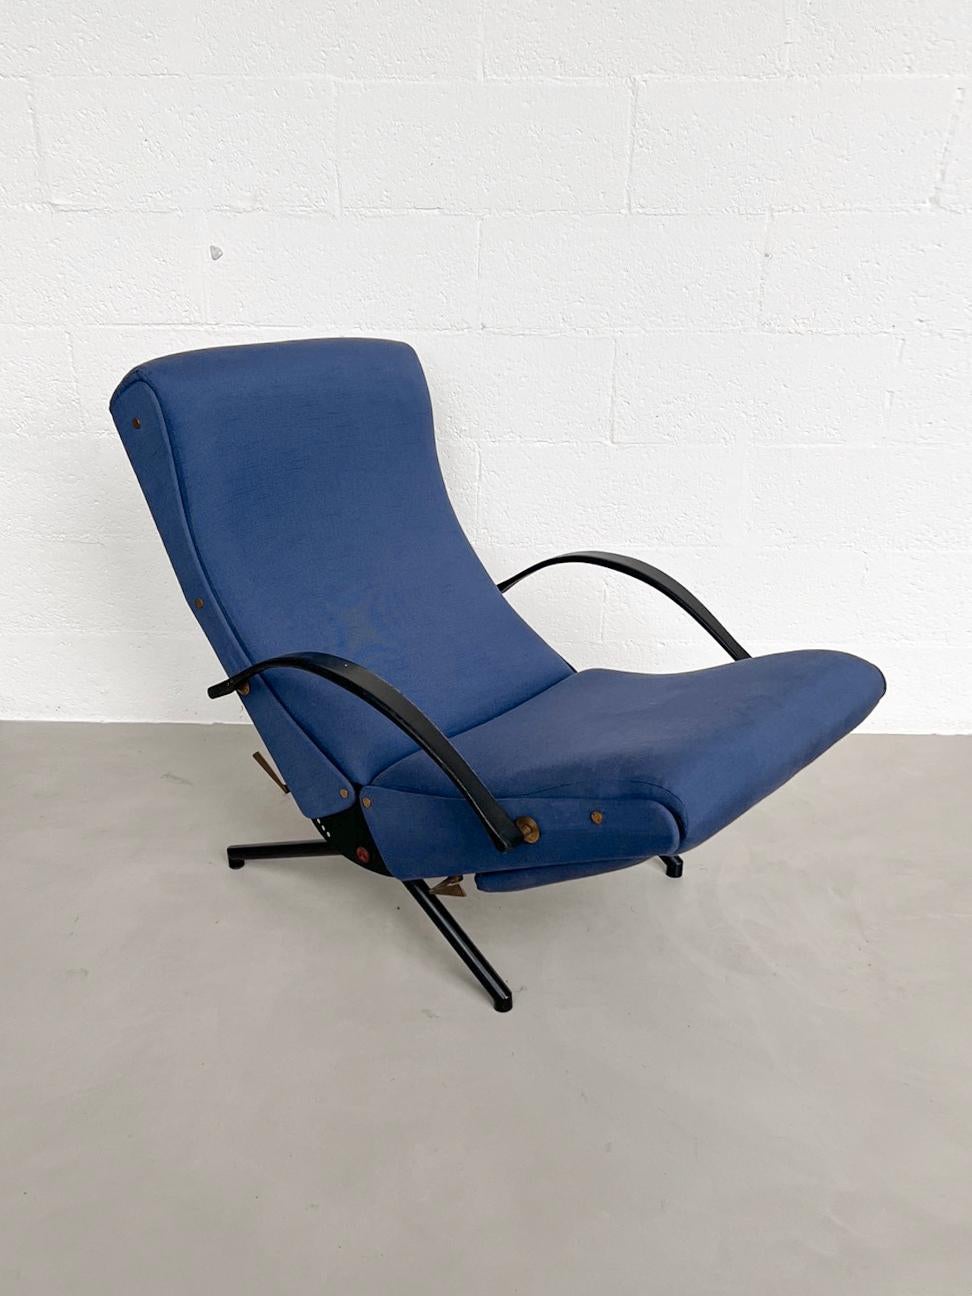 Borsani P40 Lounge Chair - Meubles de collection italiens - Fauteuil Mid Century

Conçue en 1956 par l'architecte italien Osvaldo Borsani, la chaise longue P40 - où 